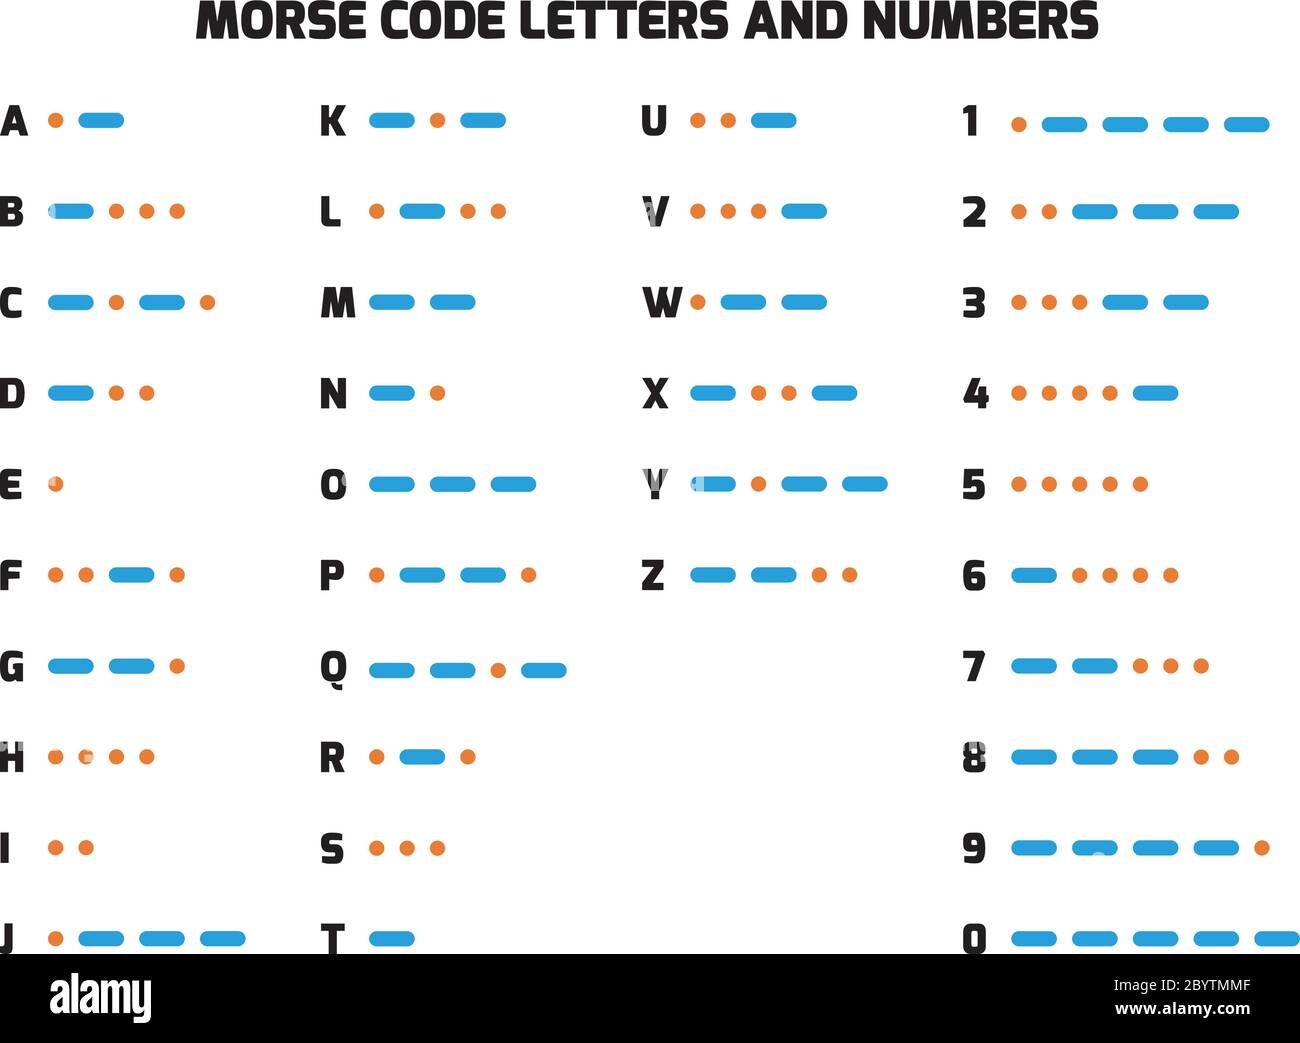 International Telegraph Morse Code Alphabet. Buchstaben A bis Z und Zahlen in Punkte und Bindestriche übersetzt. Methode zur Übertragung von Text als ein-/Ausschalttöne, Lichter oder Klicks. Einfache flache vectror Abbildung. Stock Vektor